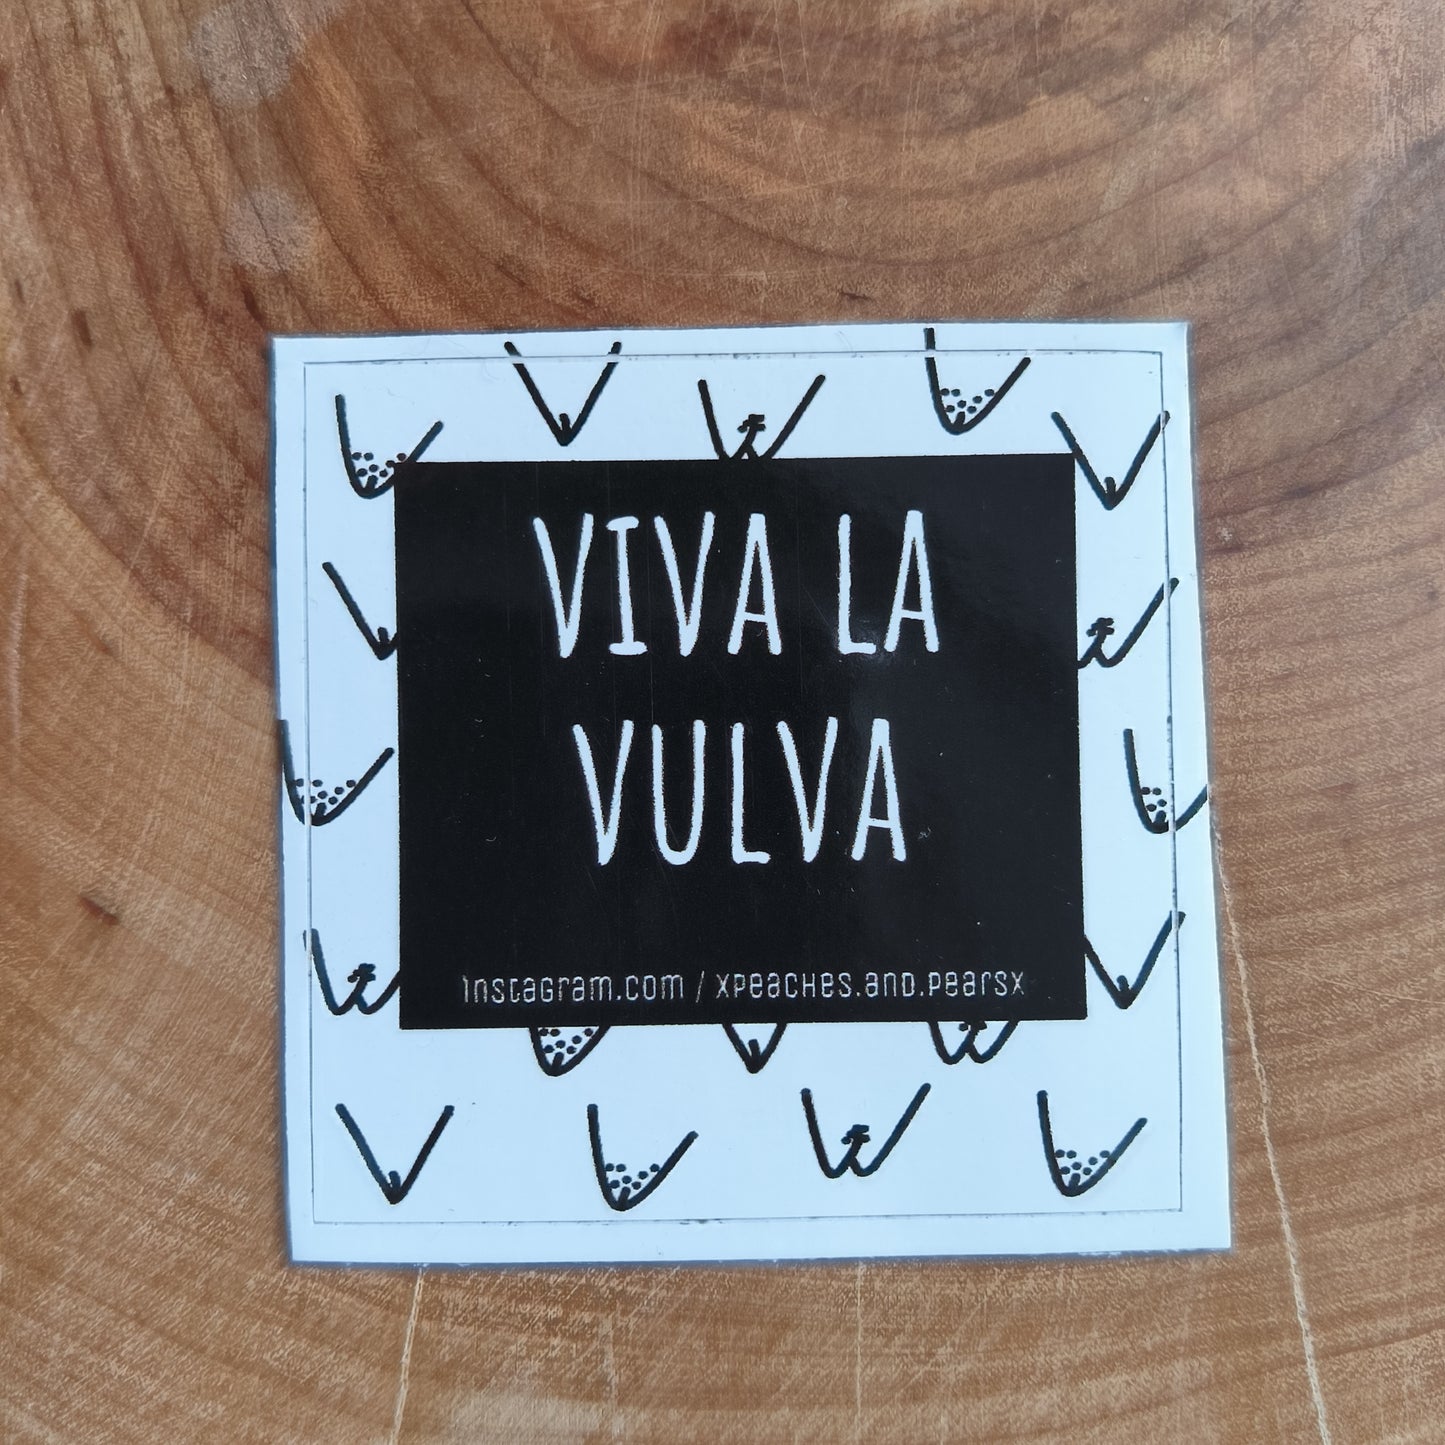 Sticker "viva la vulva"